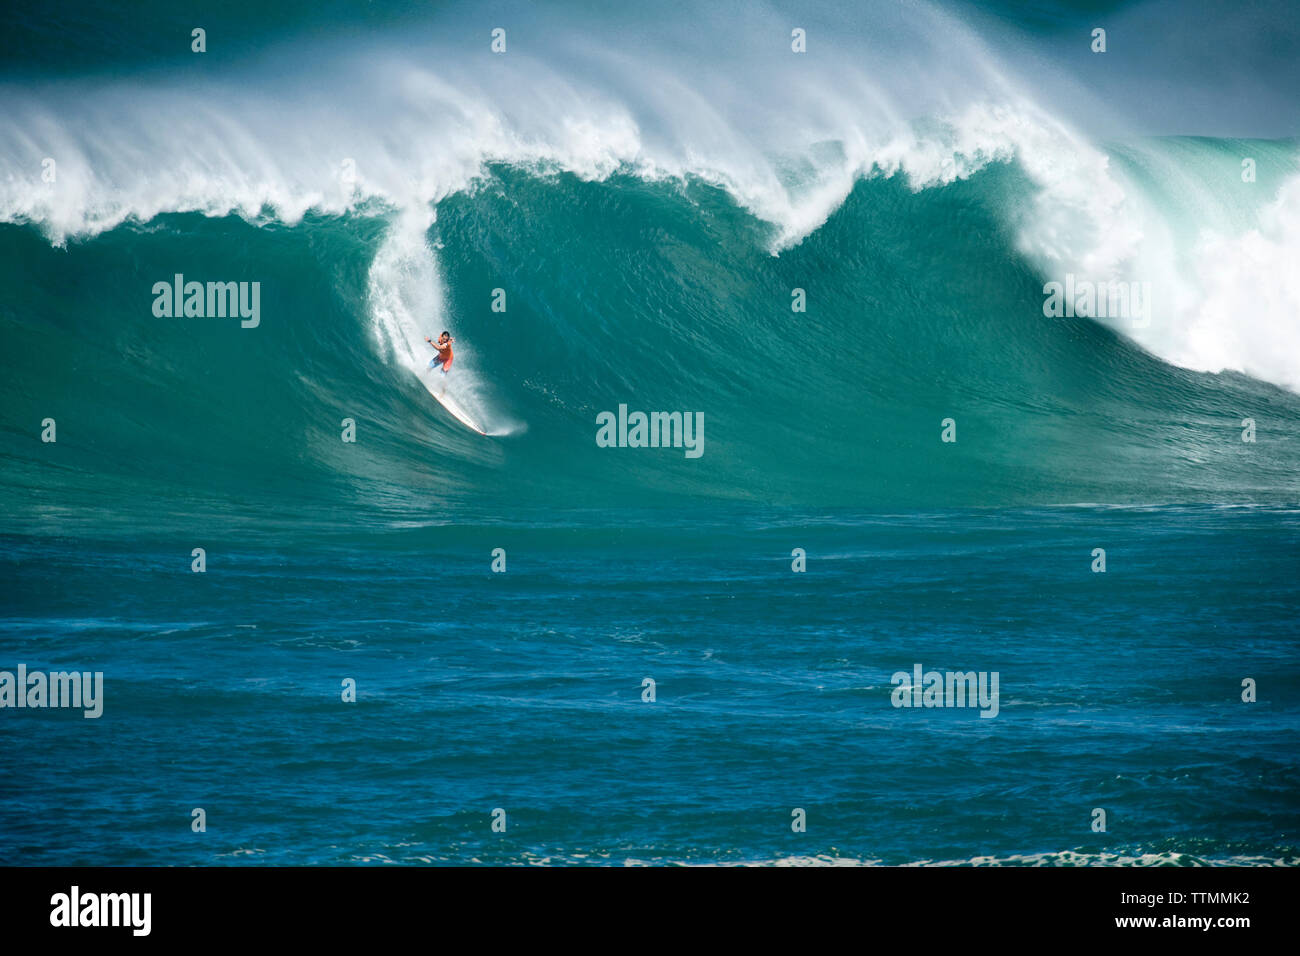 USA, Hawaii, avant de surfer sur une vague wipeout à Waimea Bay, sur la Côte-Nord Oahu Banque D'Images